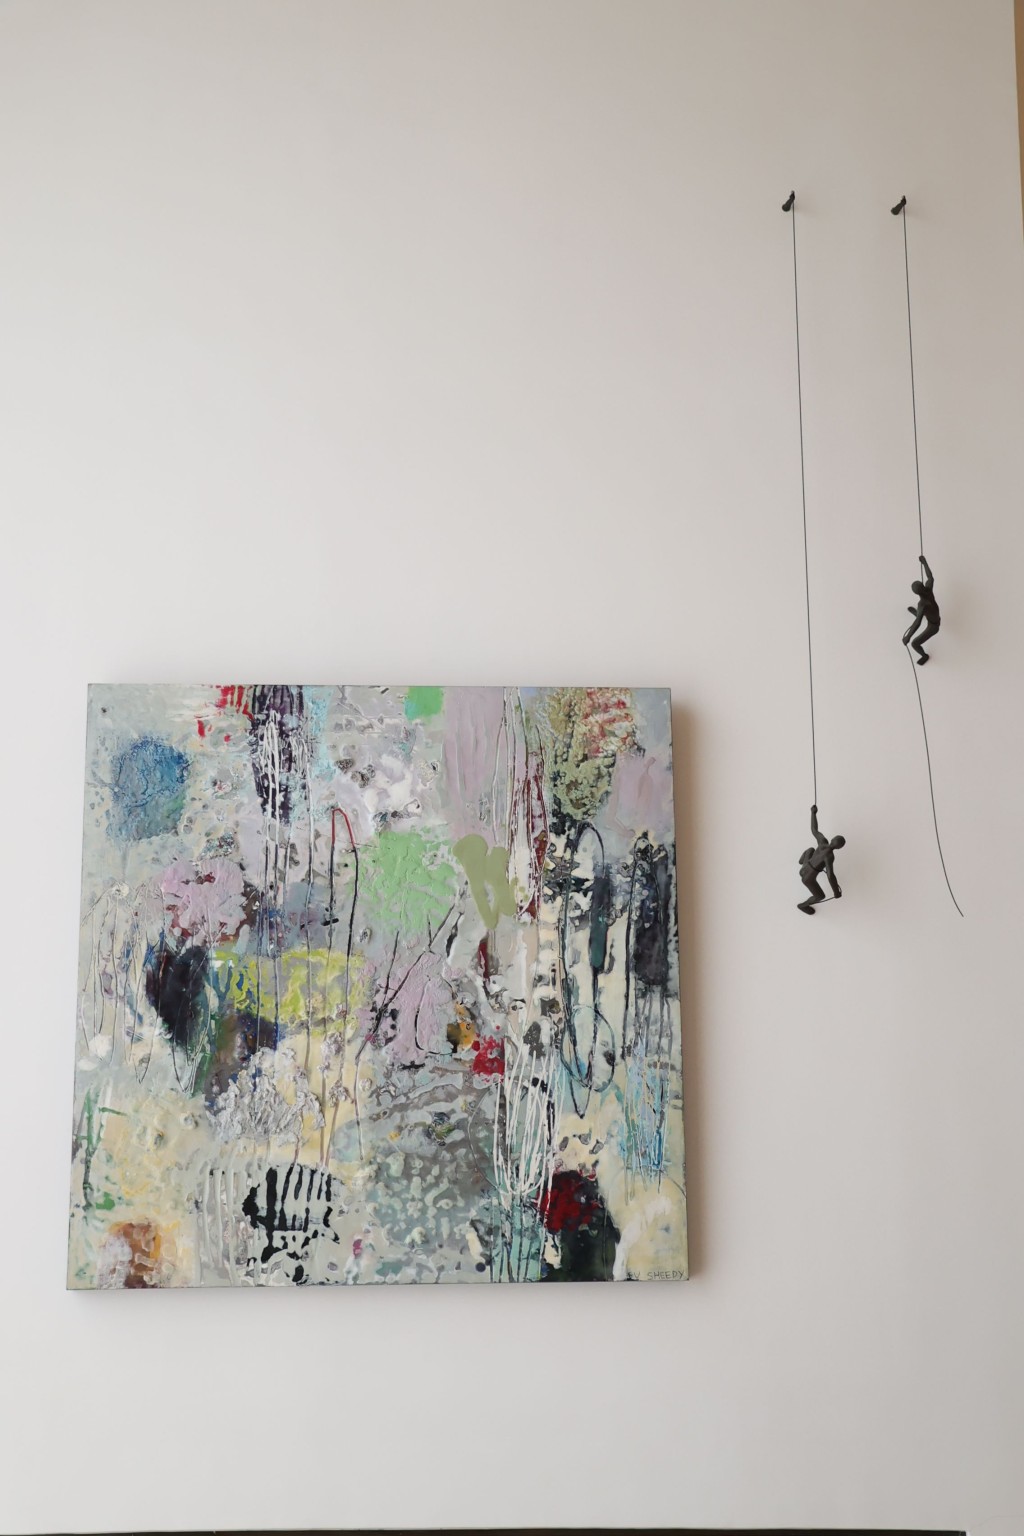 加拿大畫家Su Sheedy的抽象畫作旁邊，掛了兩個向上爬的公仔，寓意永遠向前。